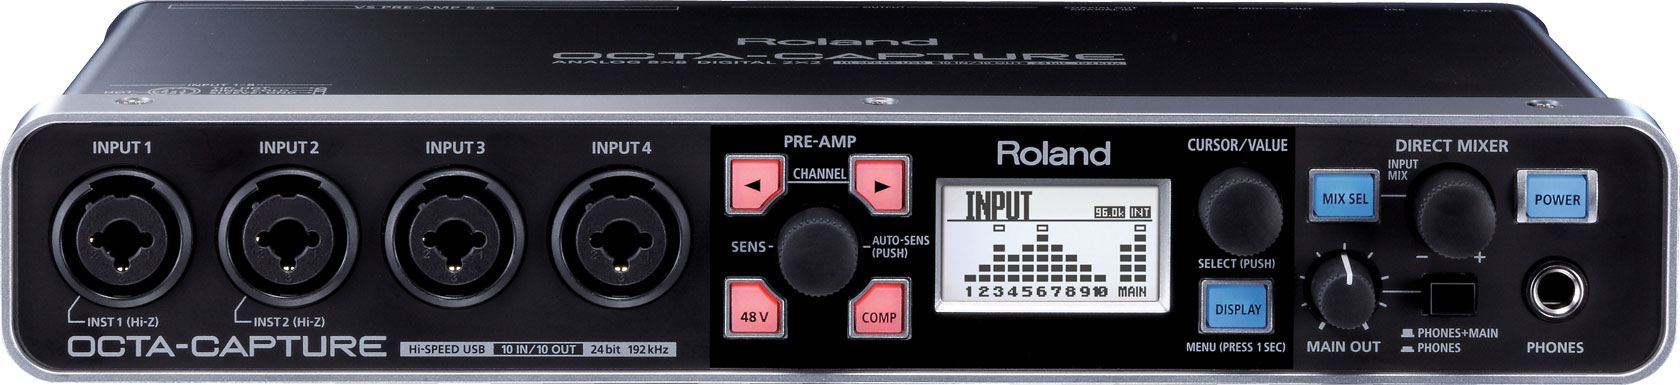 ROLAND UA-1010 USB аудио интерфейс для звукозаписи